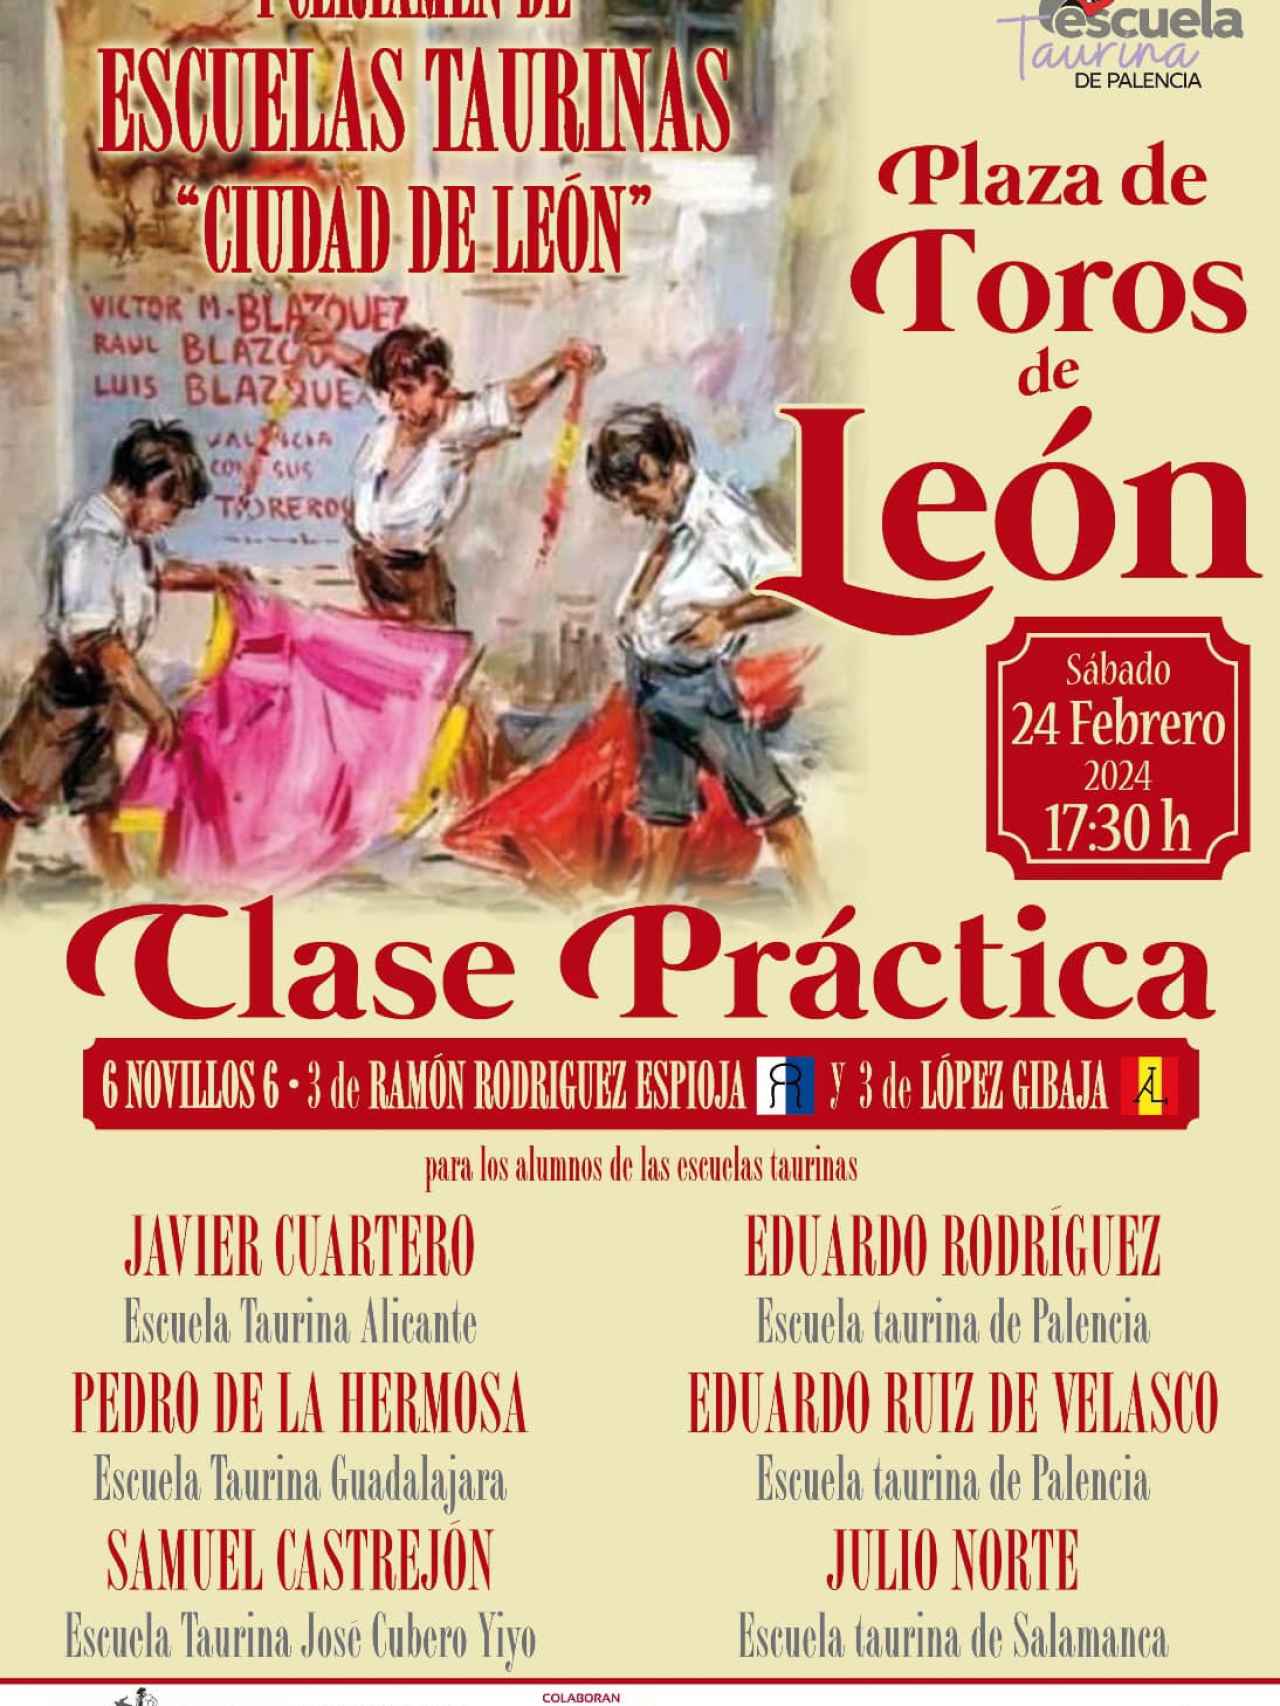 Cartel que anuncia la novillada en León